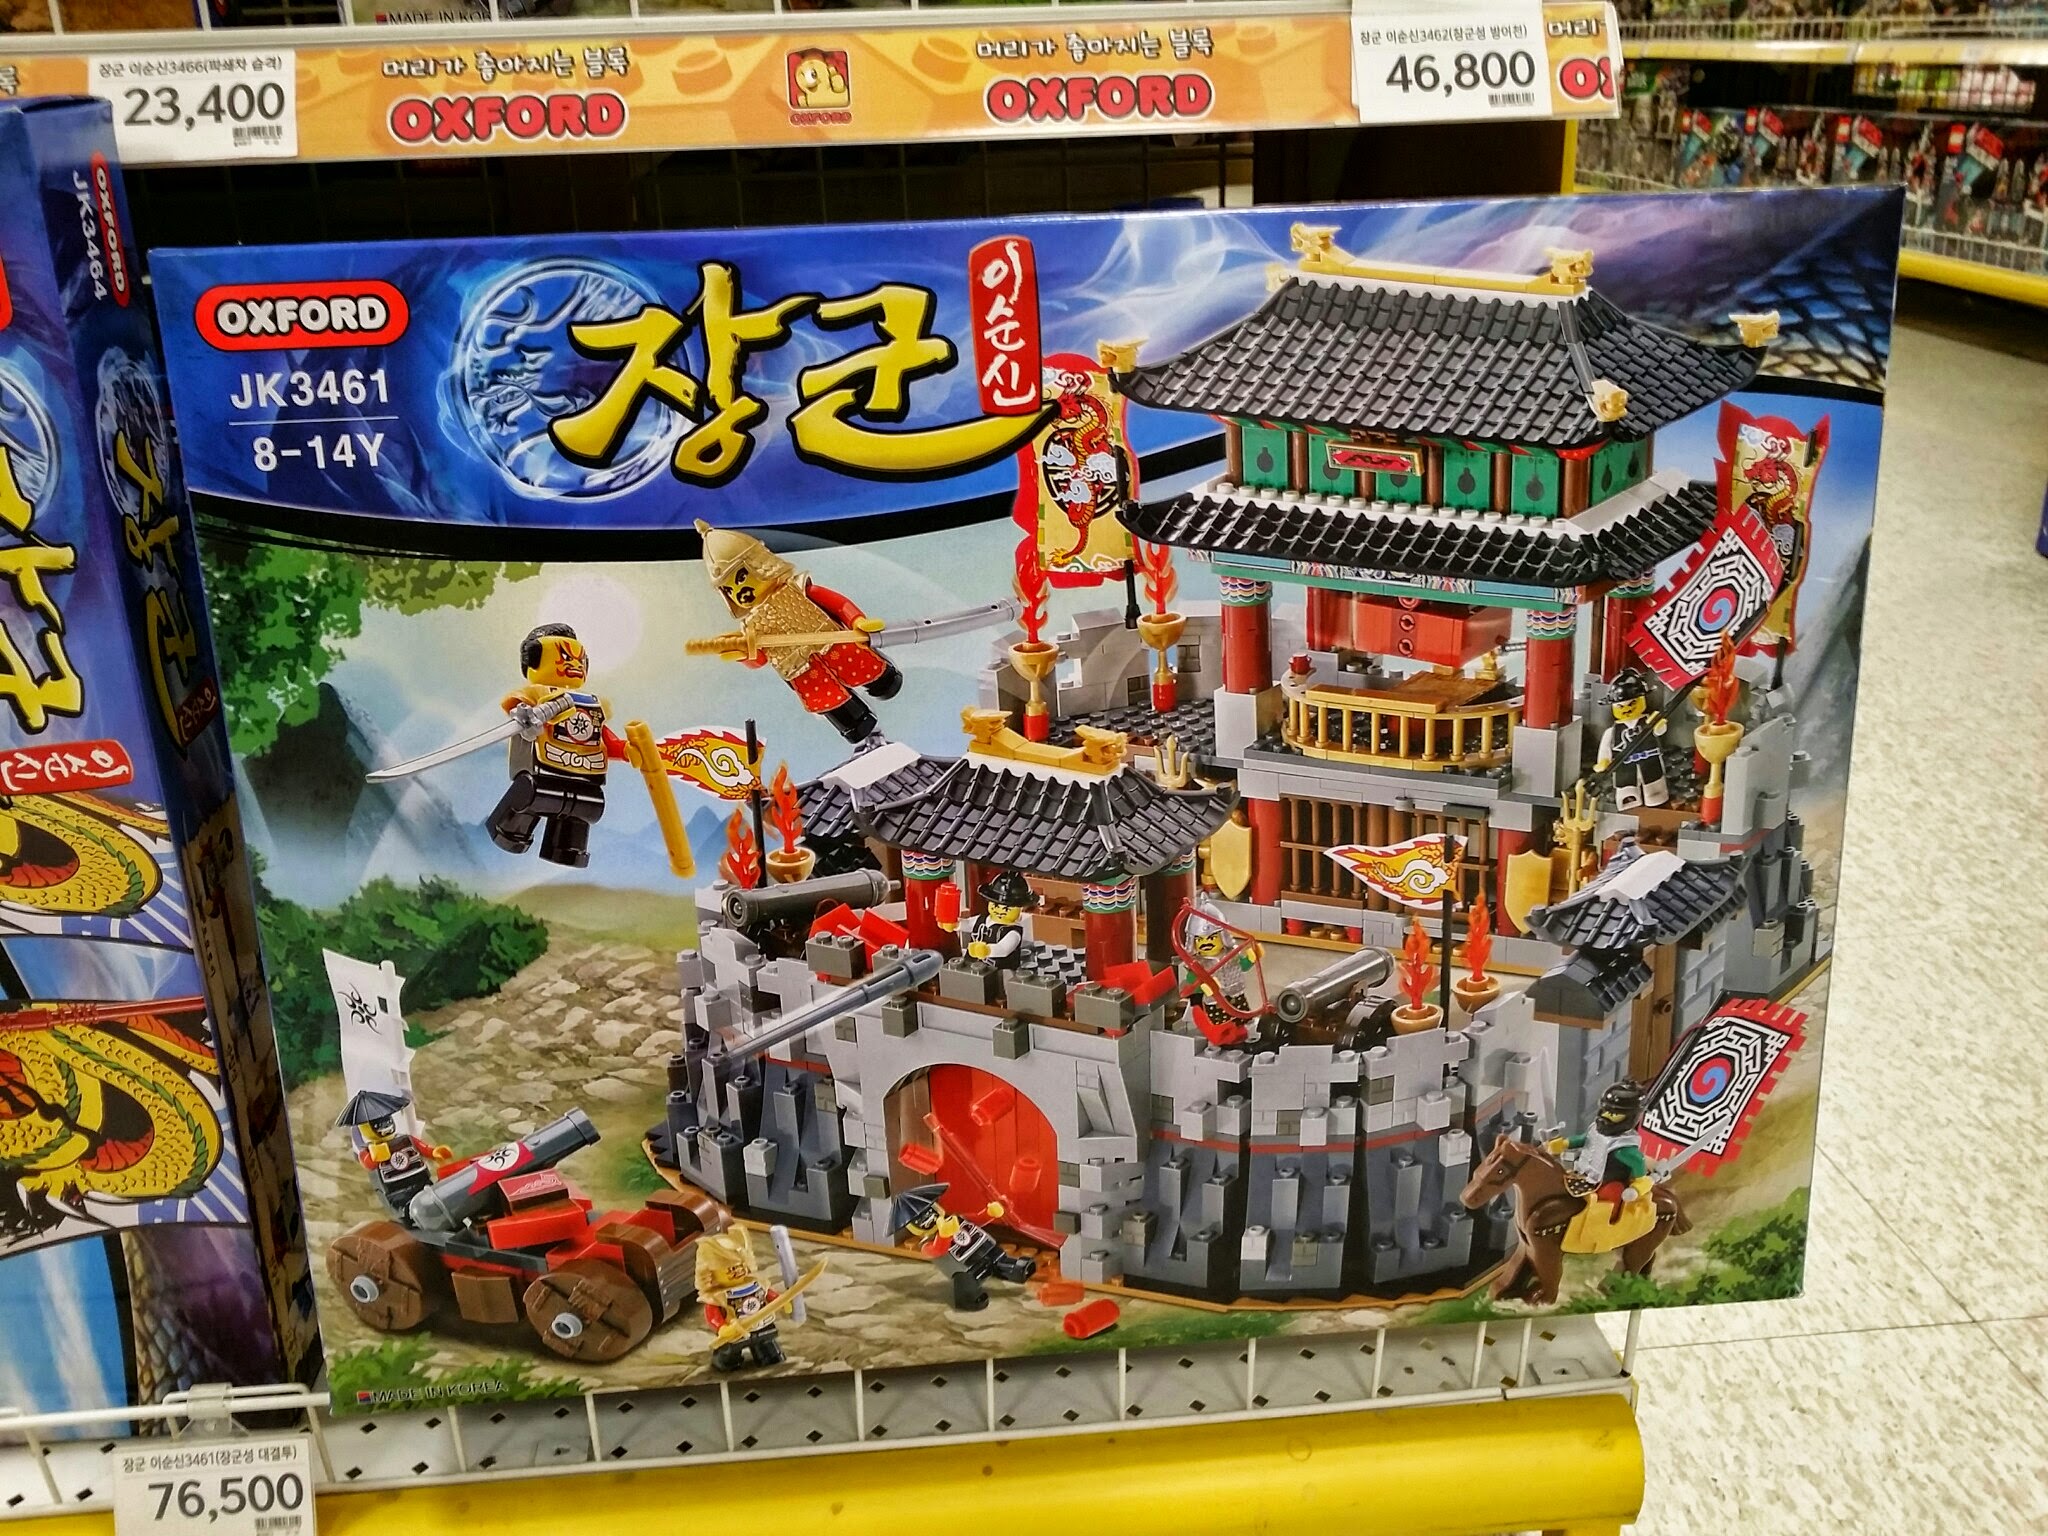 プチおもちゃ】韓国レゴと呼ばれる「OXFORD」社のブロックおもちゃ